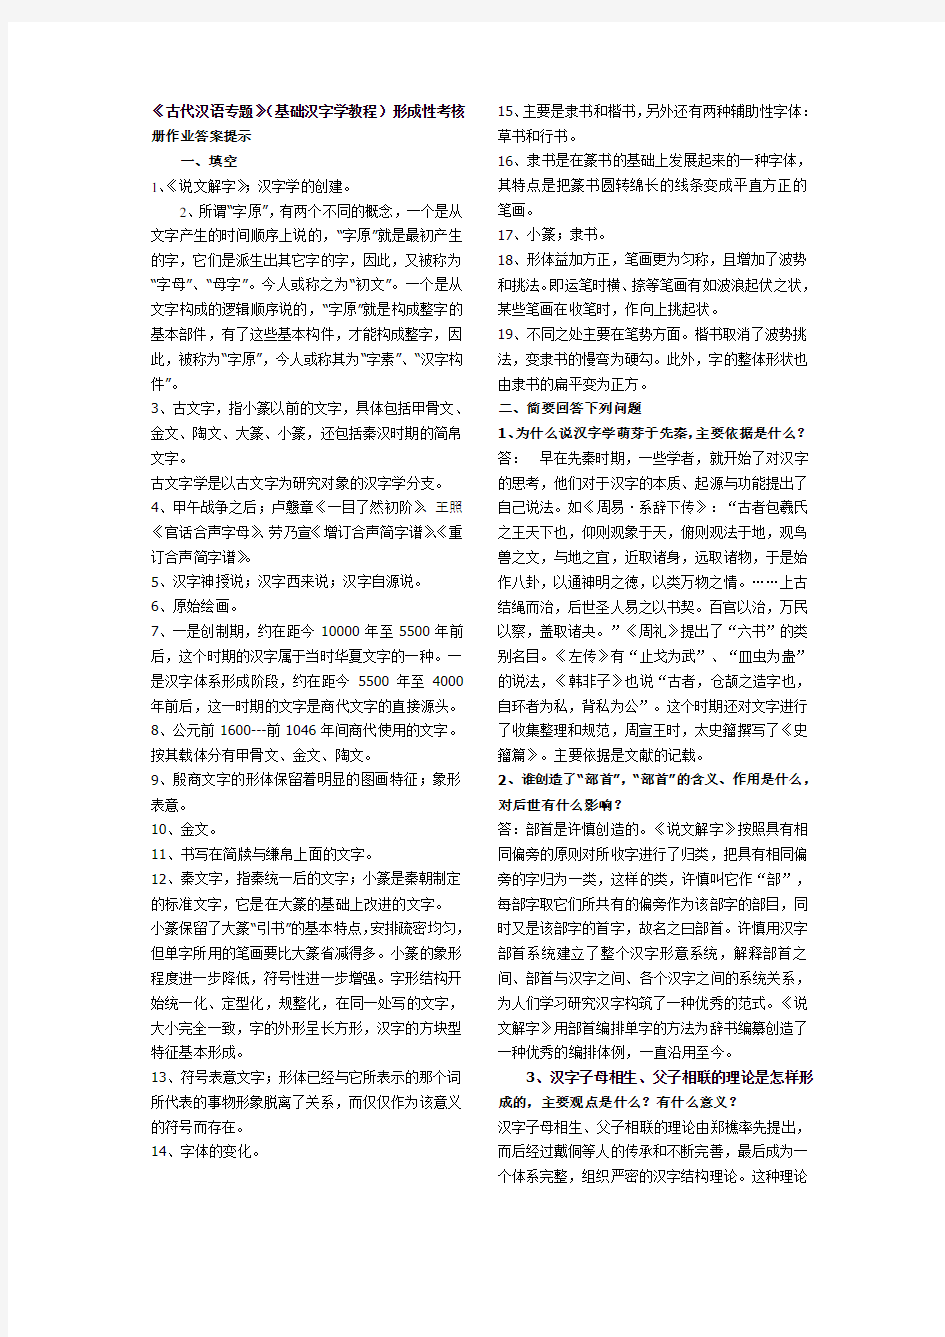 《古代汉语专题》 基础汉字学教程 形成性考核册作业答案提示